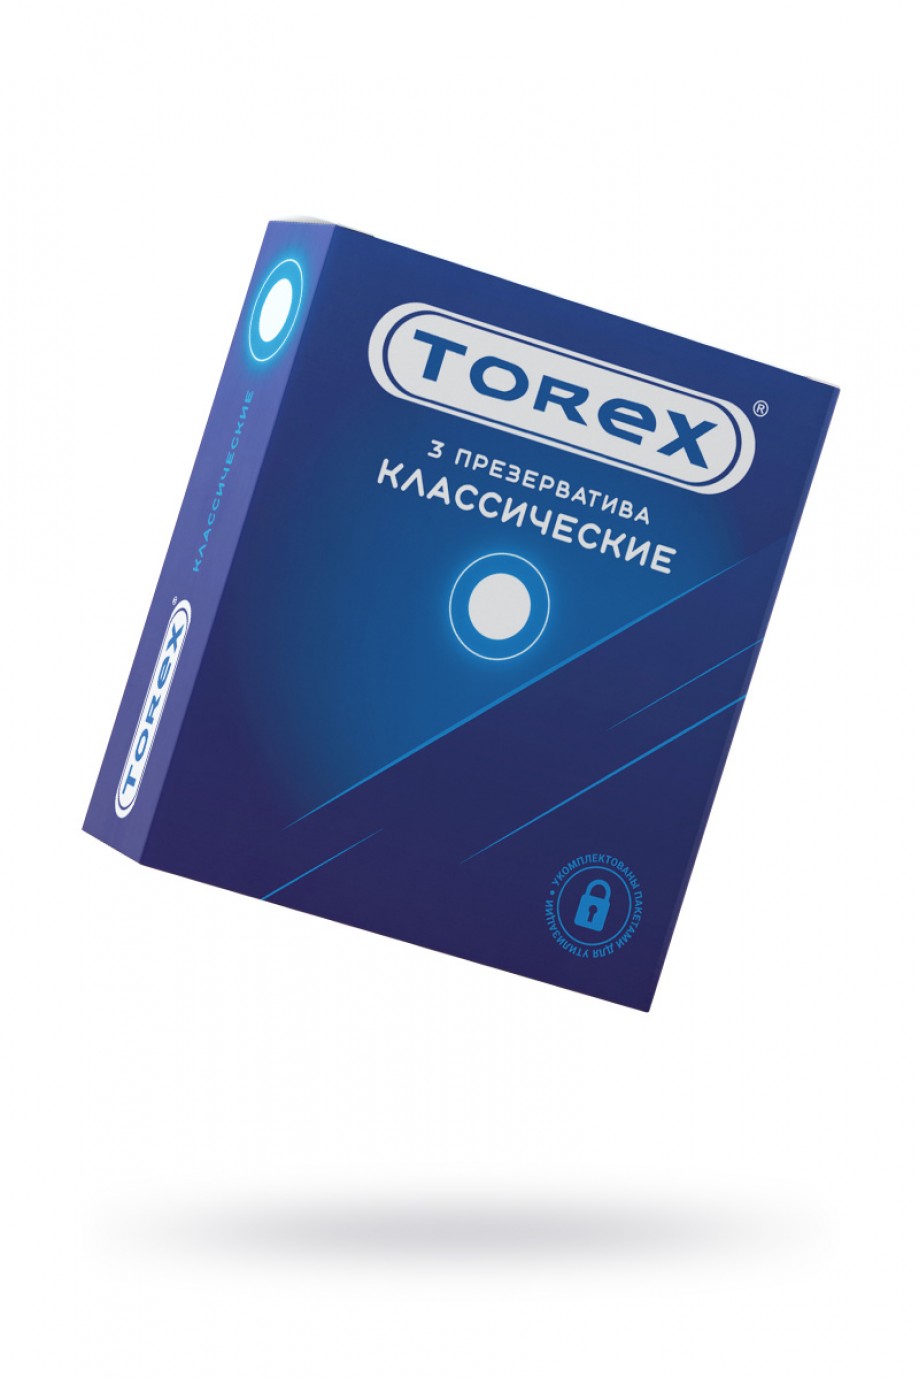 Презервативы TOREX классические, латекс, 3 шт